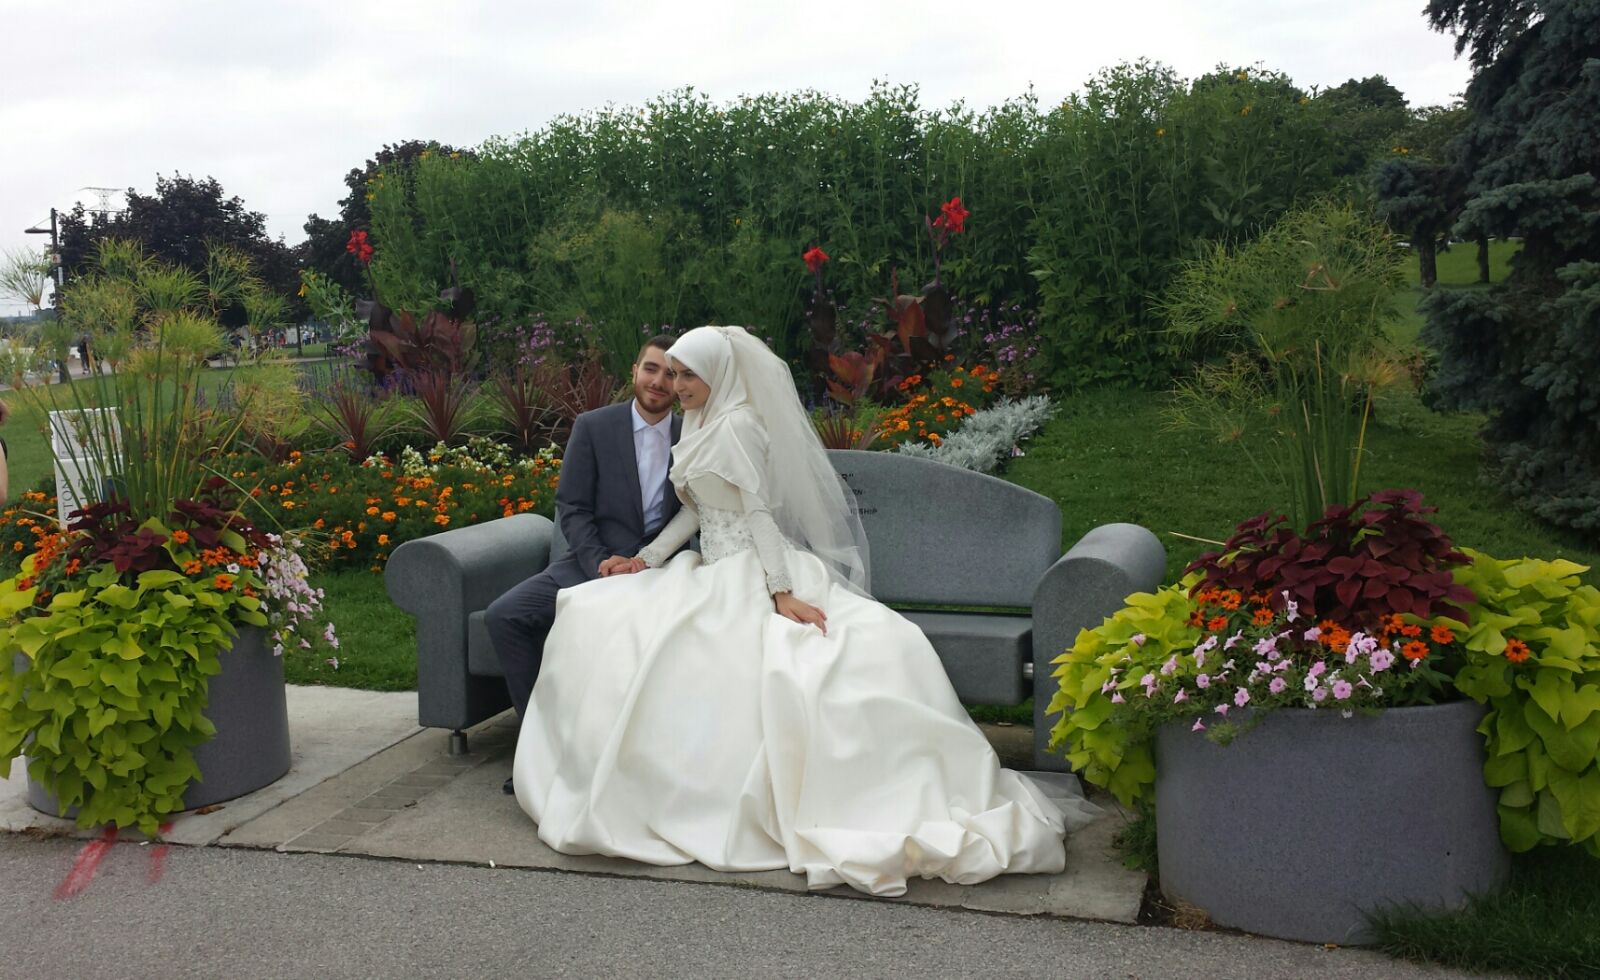 زفاف الشاب جعفر بسام حمود والآنسة سحر فداء جابر في مدينة هاملتون الكندية